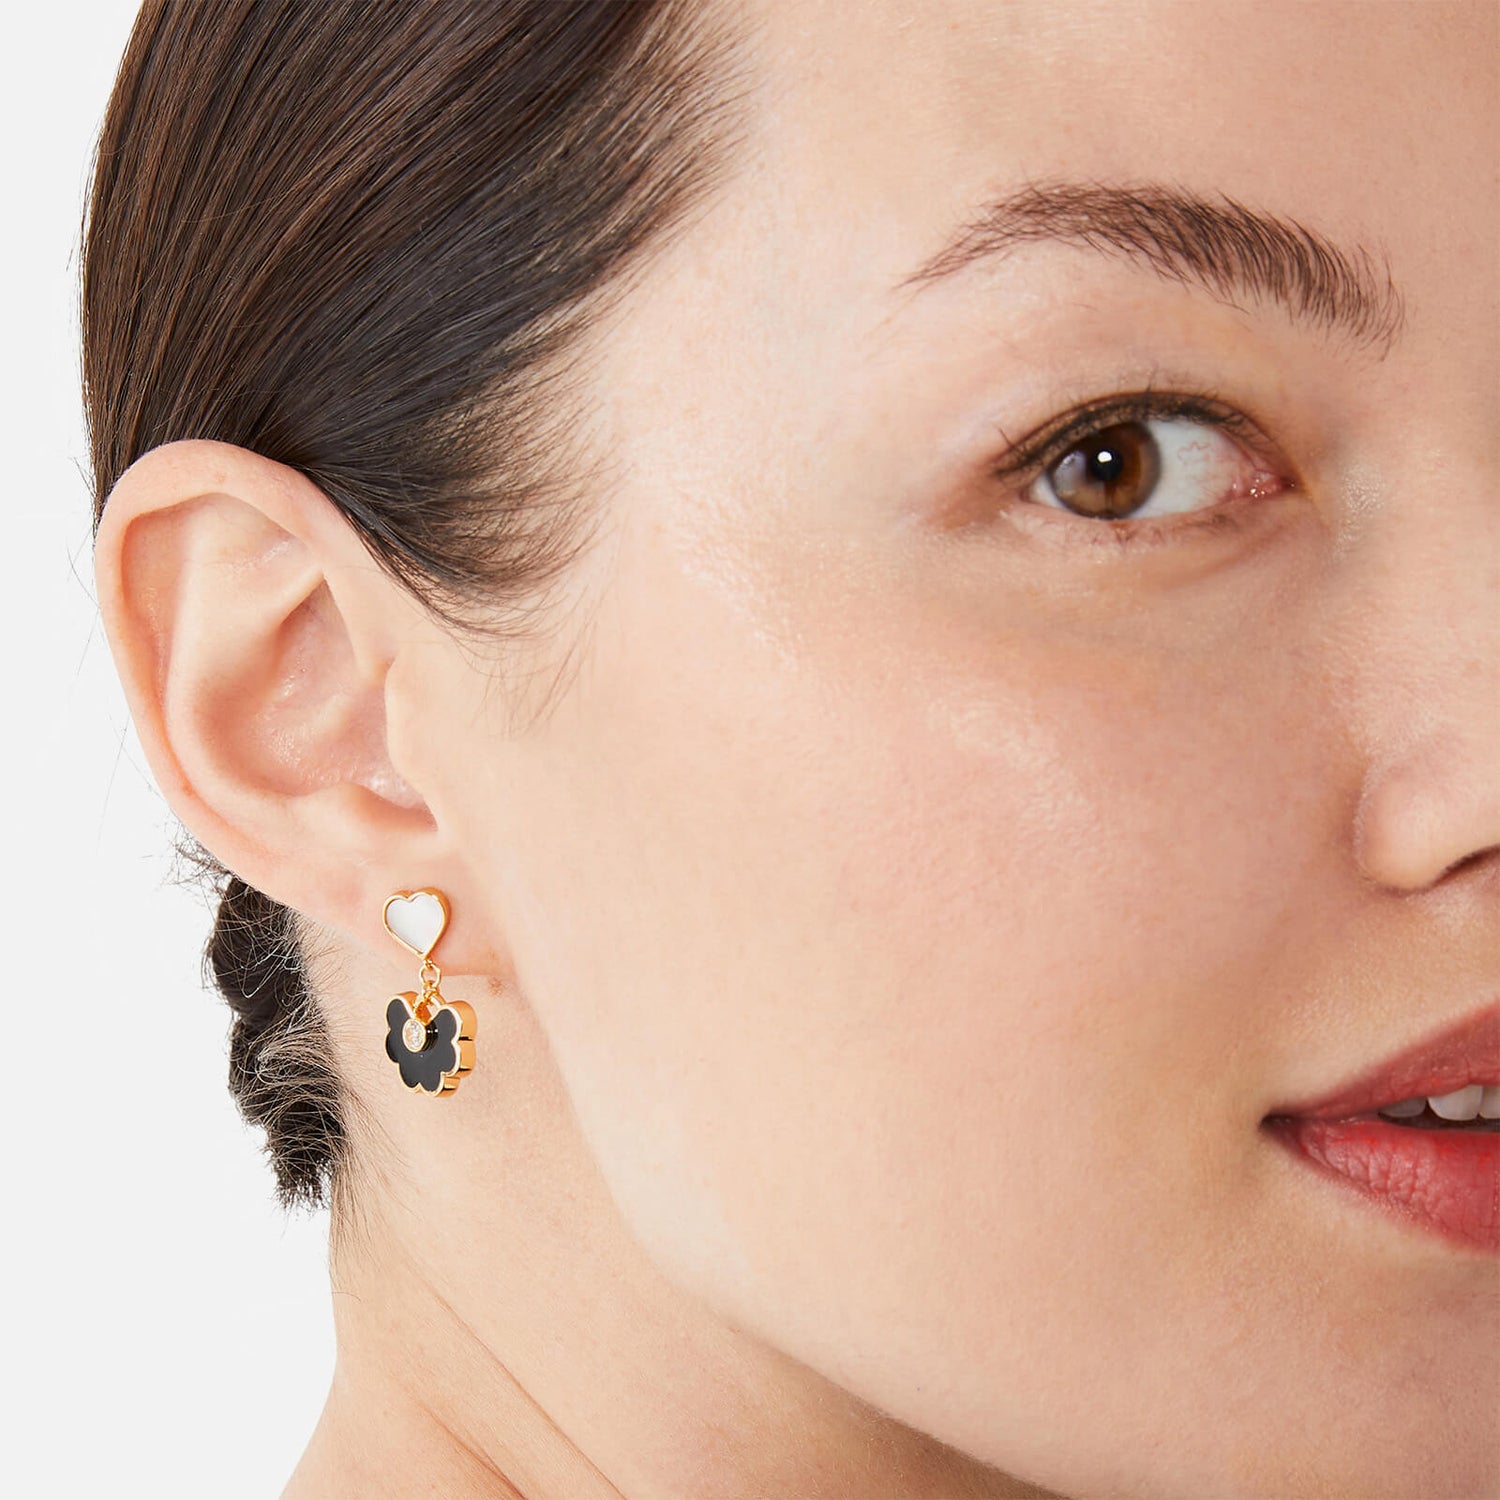 Kate Spade New York Women's Spade Flower Drop Earrings - Black/Gold